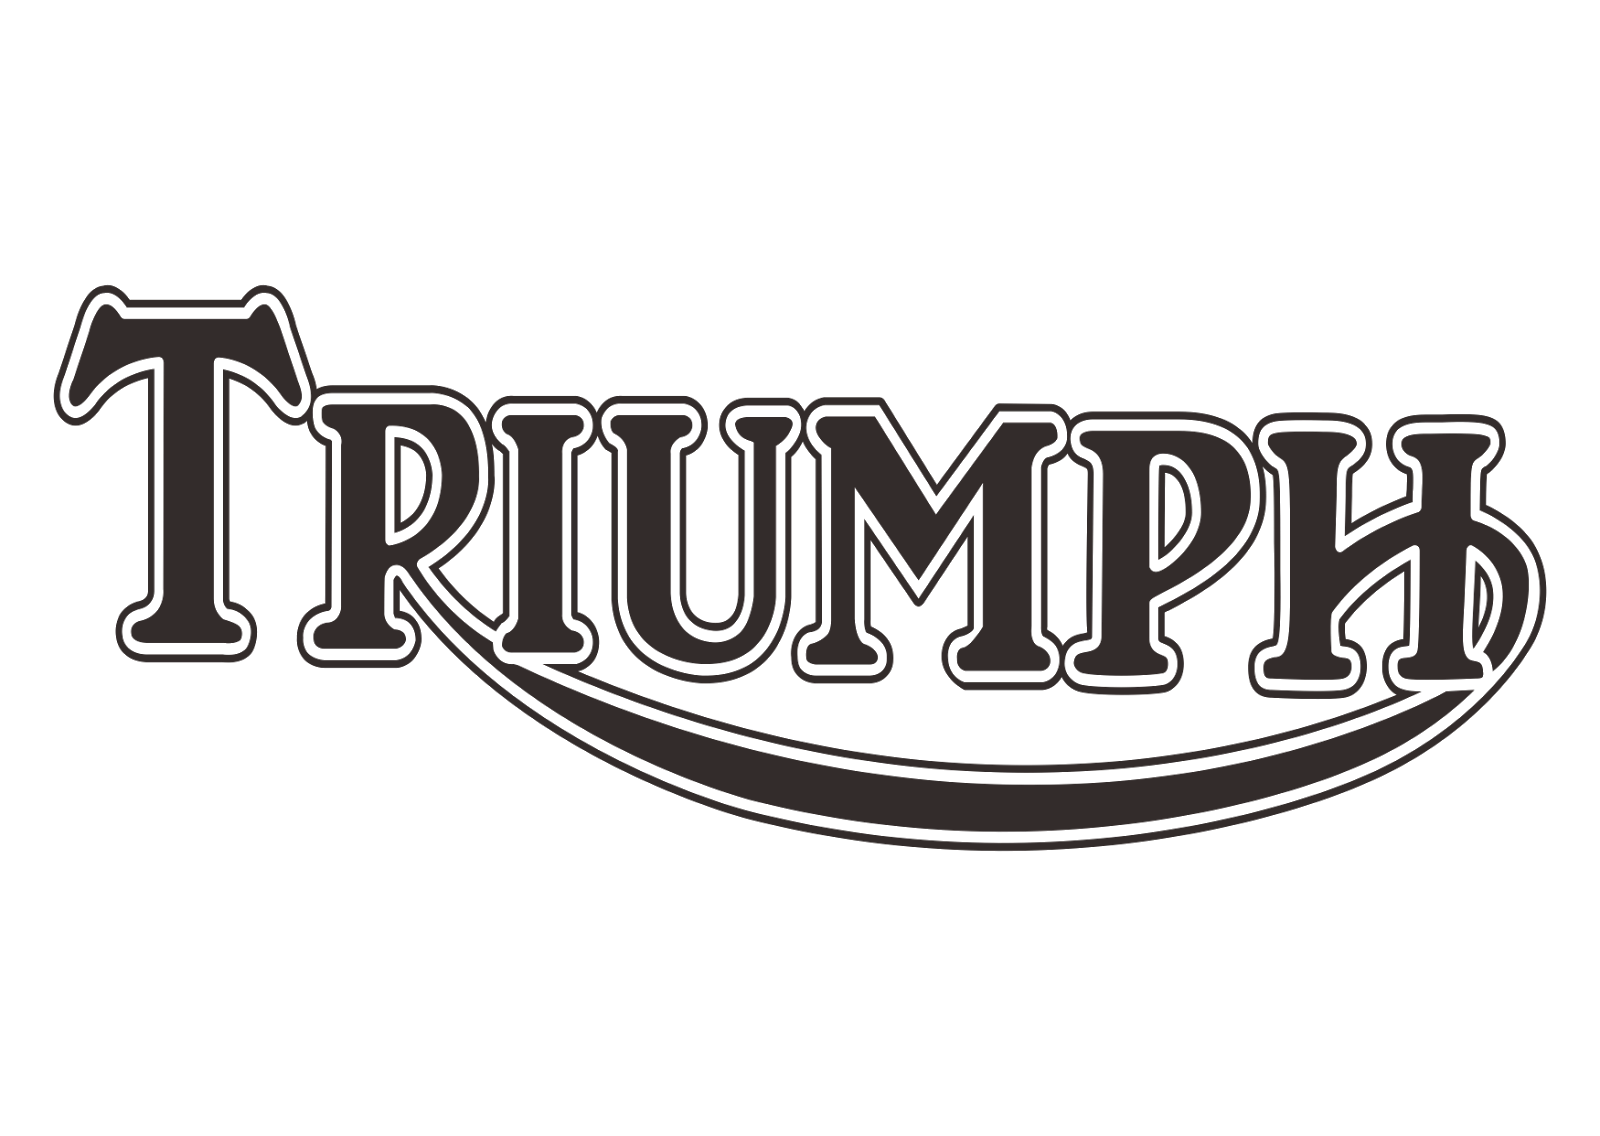 Triumph 2013 vector logo